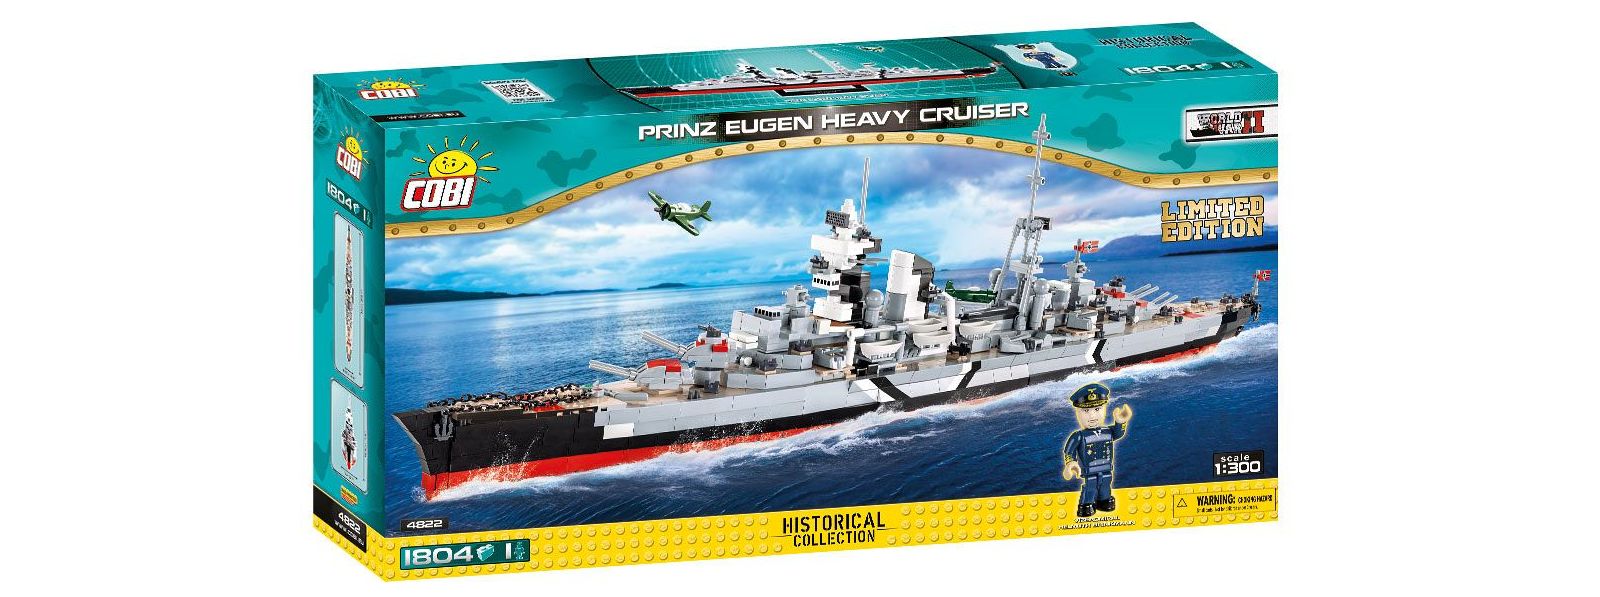 Przedsprzedaż Prinz Eugen Edycja Limitowana - rozpoczęta!